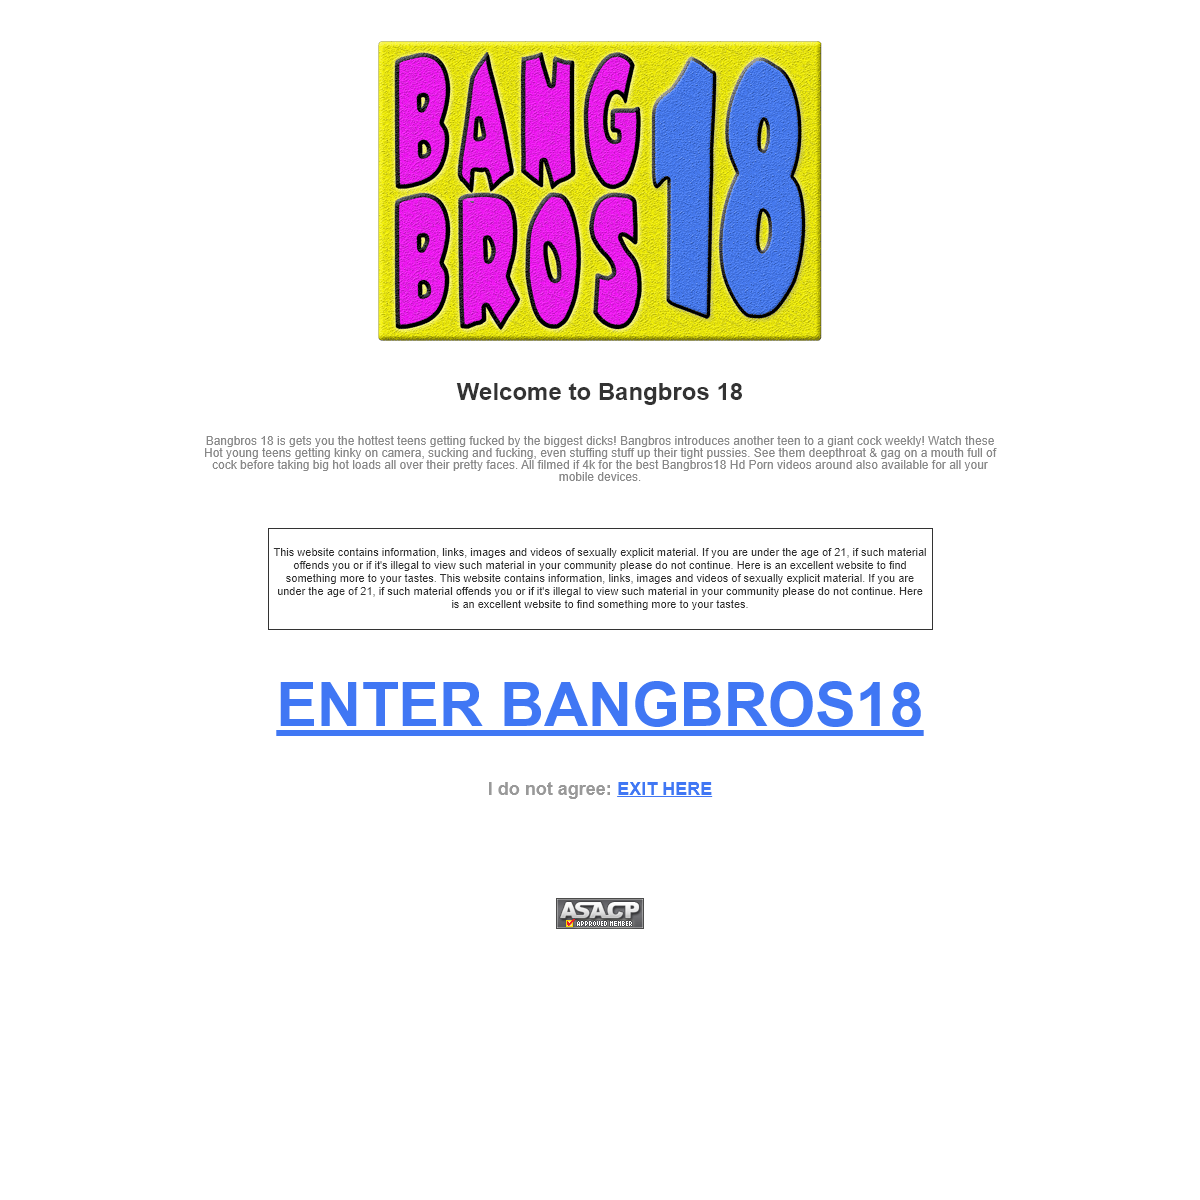 A complete backup of bangbros18.com